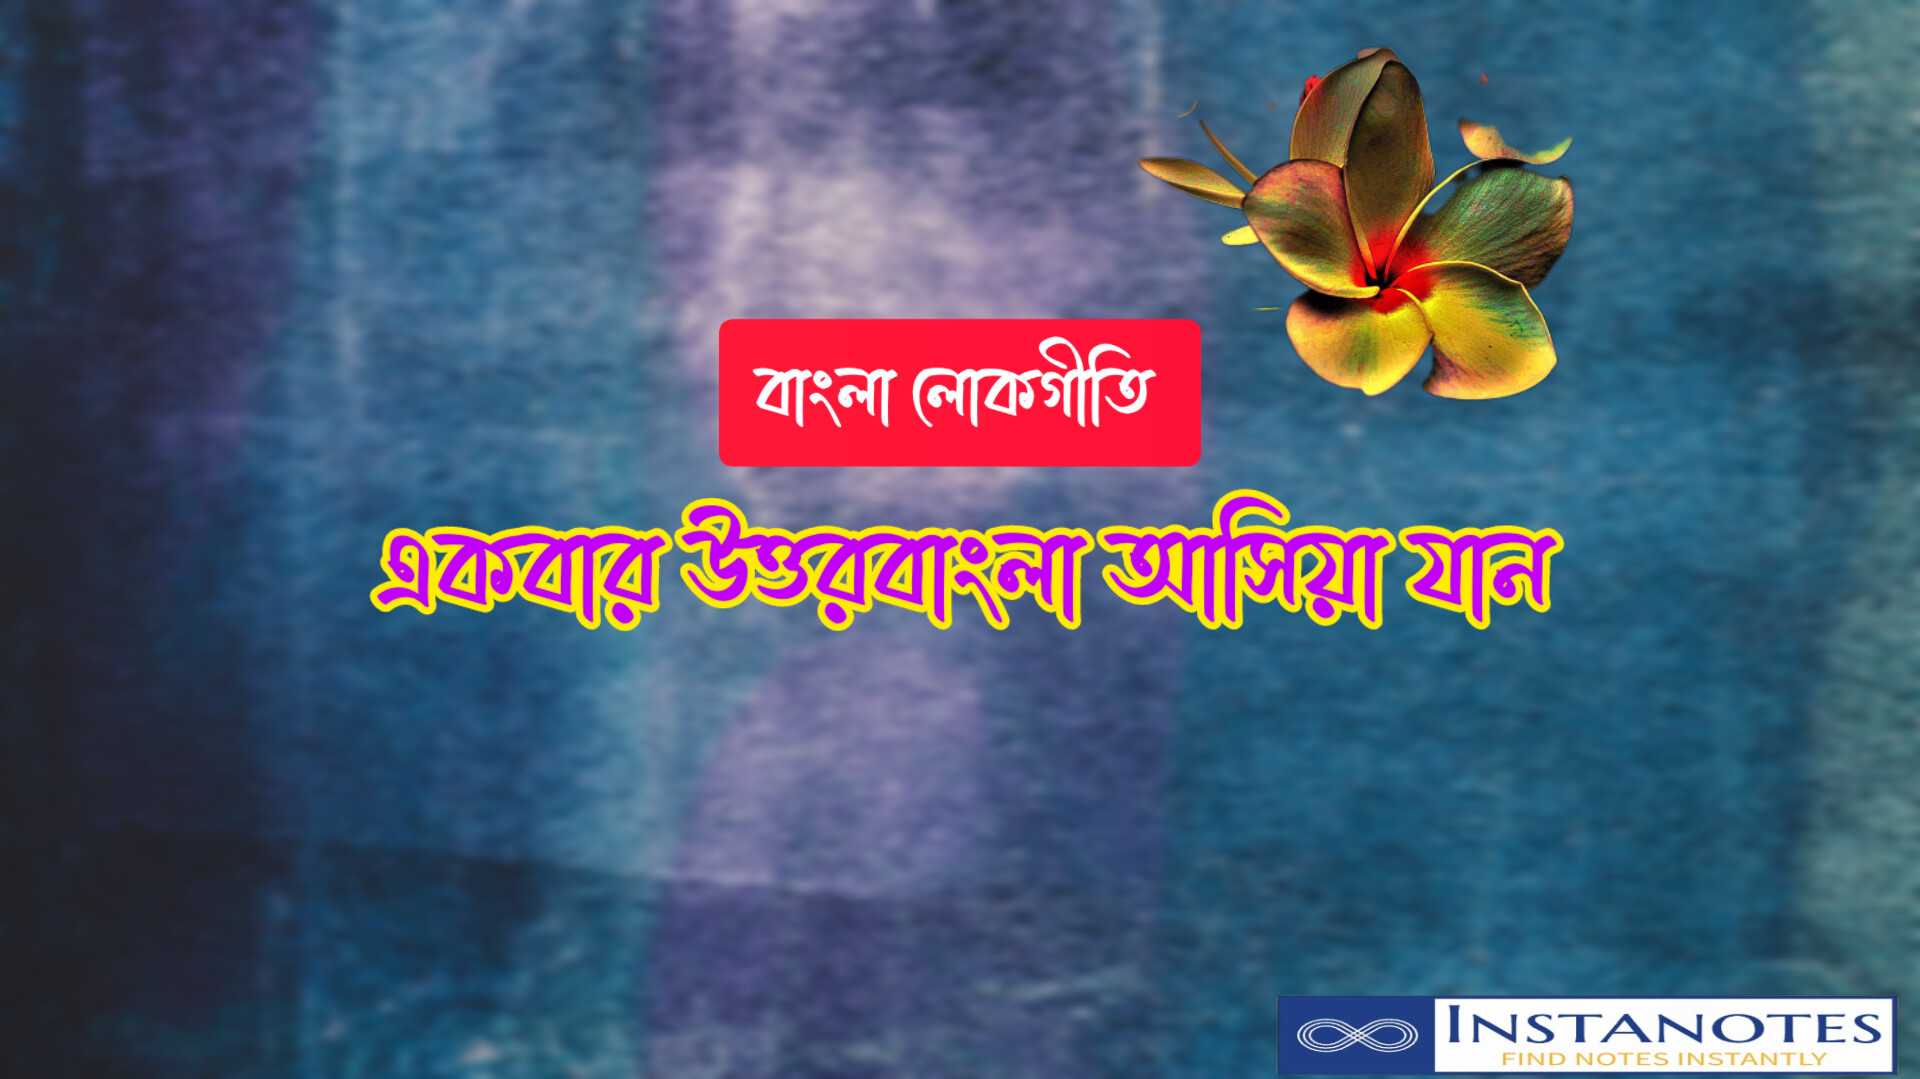 উত্তরবাংলা আসিয়া যান ভাওয়াইয়া গান লিরিক্স |Uttar Bangla Ashiya Jaan Bhawaiya Song Lyrics